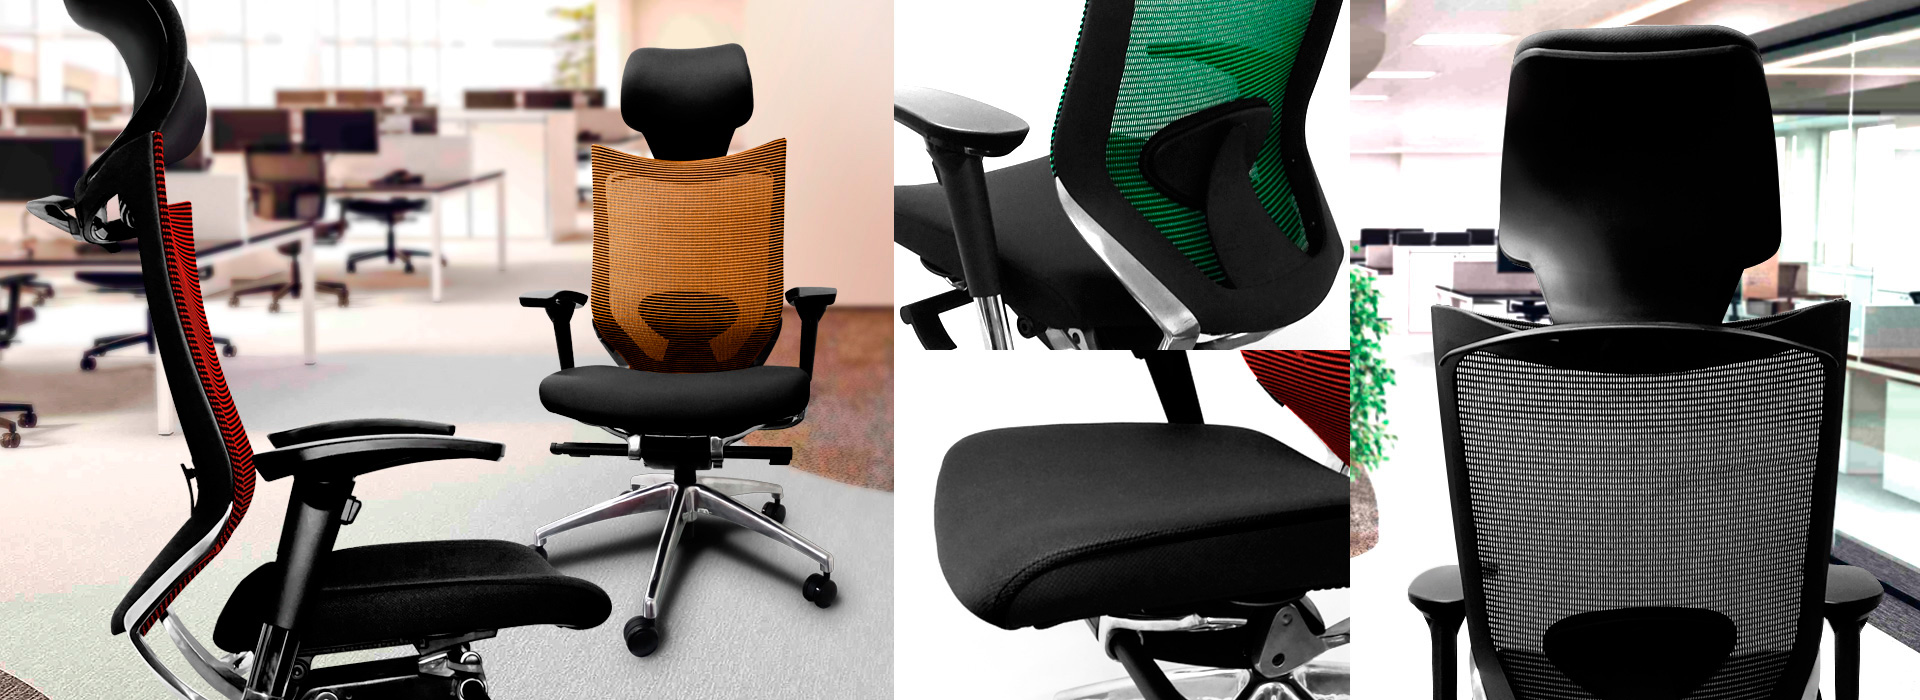 silla-ergonomica-ortopedica-para-oficina-venta-peru-bismet